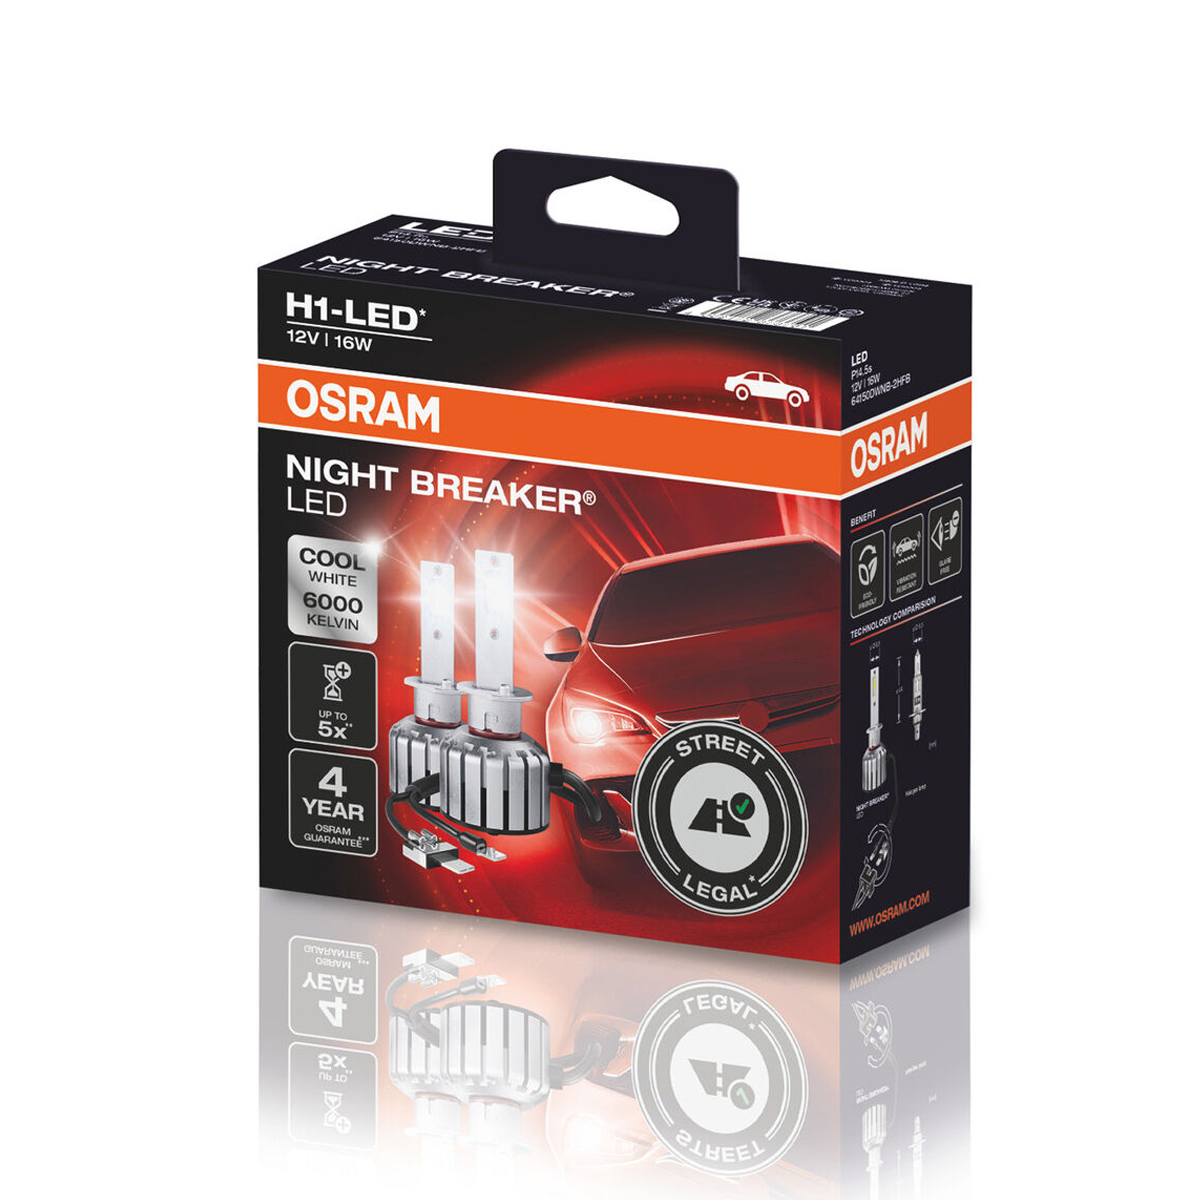 OSRAM H1 NIGHT BREAKER LED Scheinwerferlampe 6000K 12V 16W Straßenzulassung, Night Breaker LED, OSRAM Night Breaker LED, Beleuchtung